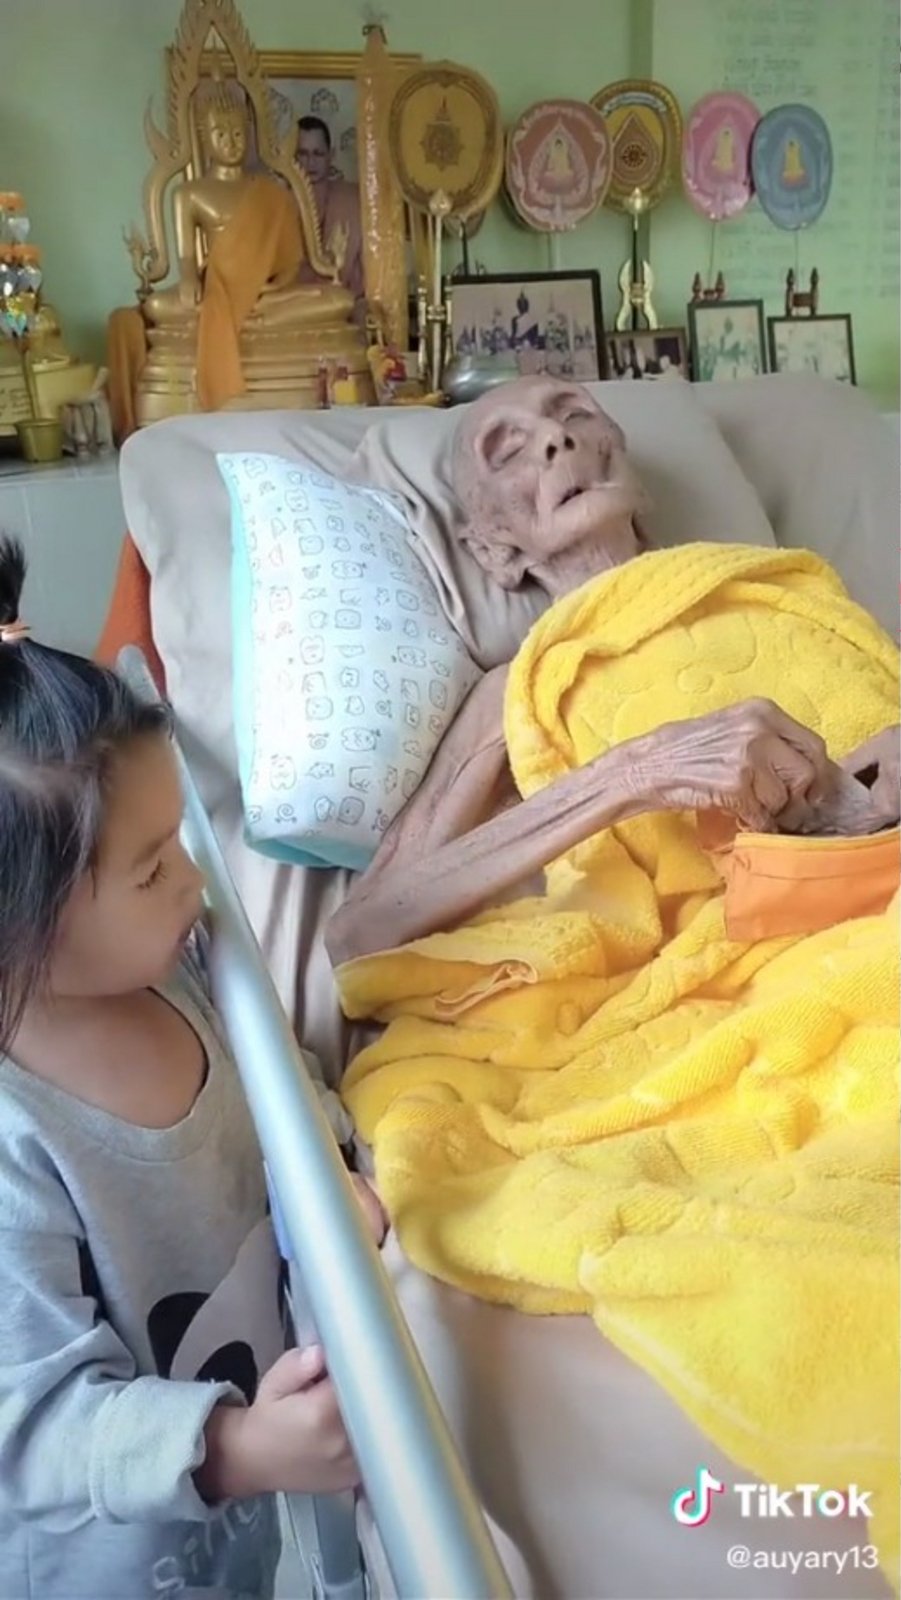 TikTok šokovalo video s Luang Pho Yaiem z Thajska. Uživatelé začali tvrdit, že je mu 163 let a dokonce prochází sebe-mumifikací.